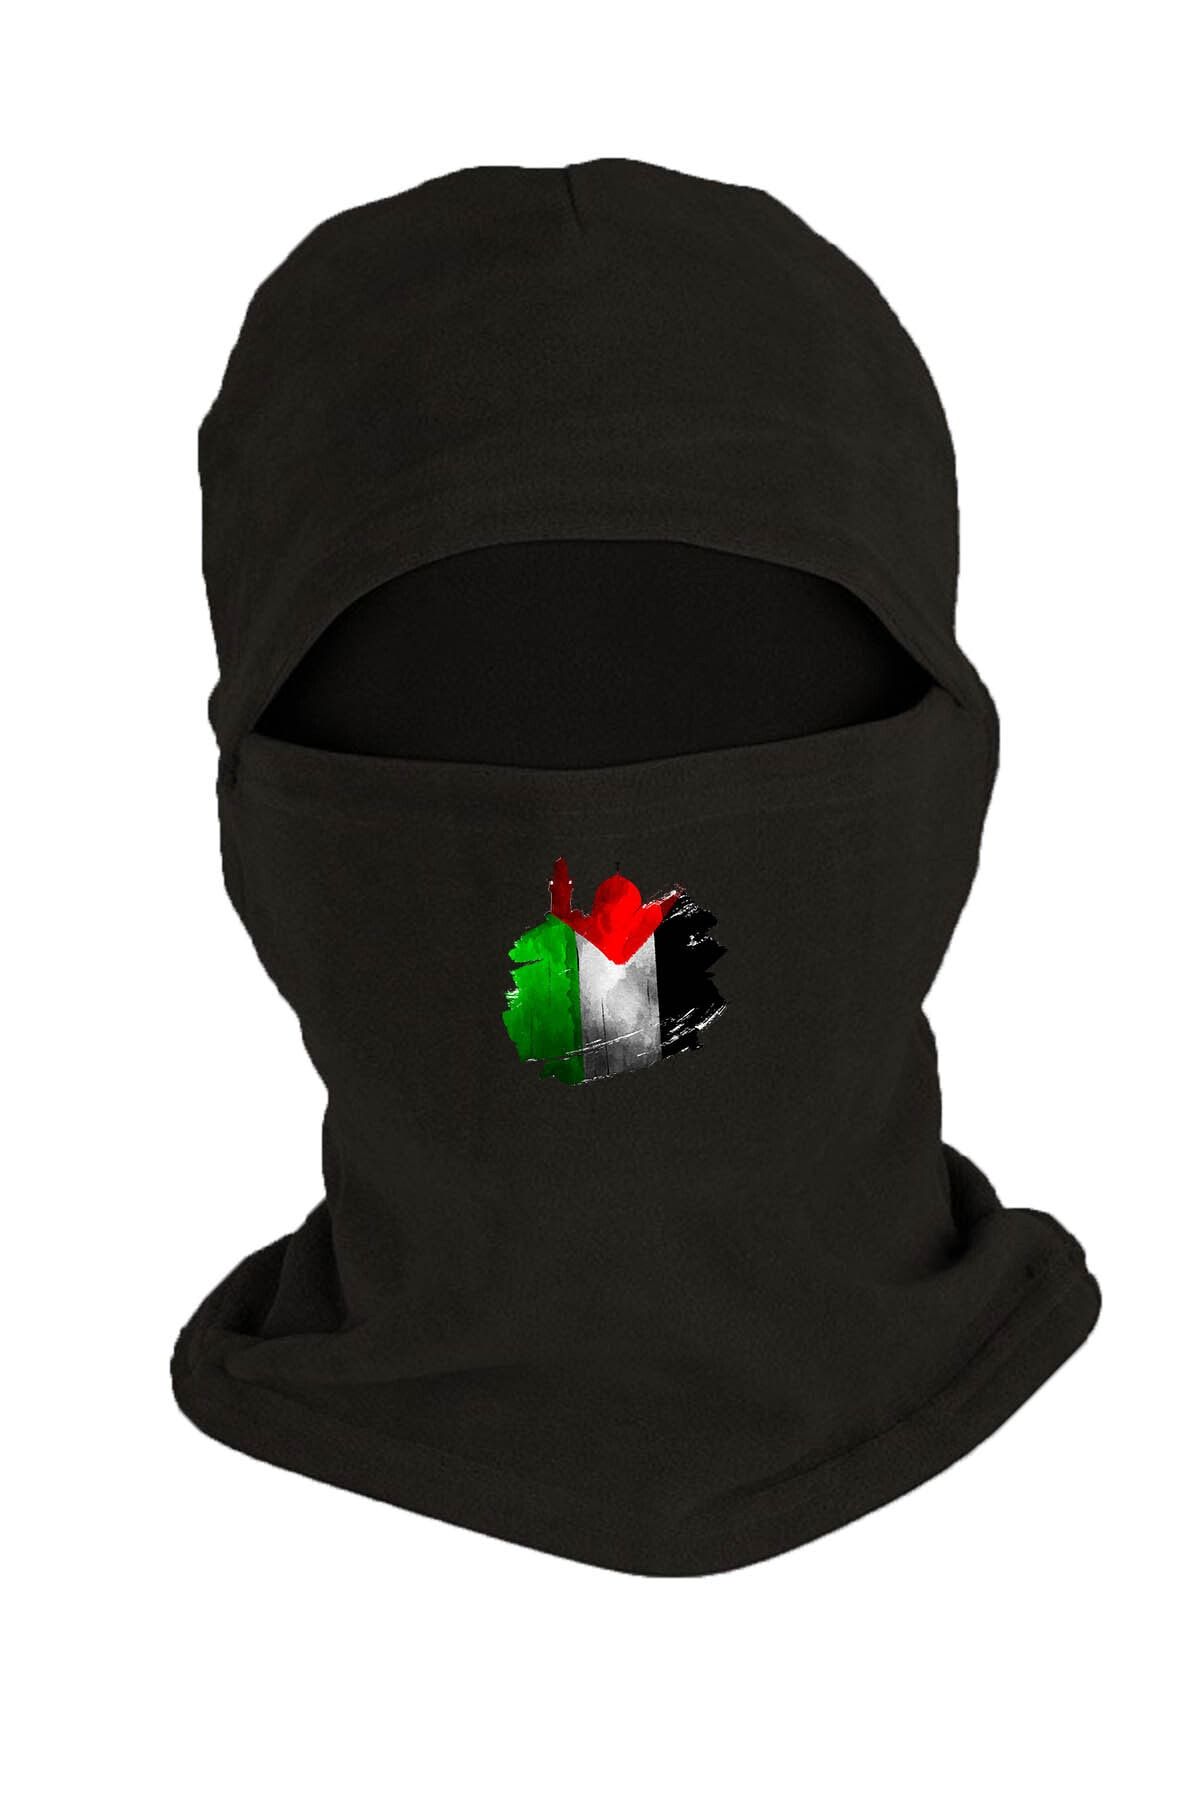 Zeron Tasarım Filistin Baskılı Kışlık Polar Kar Maskesi Siyah Bll2283